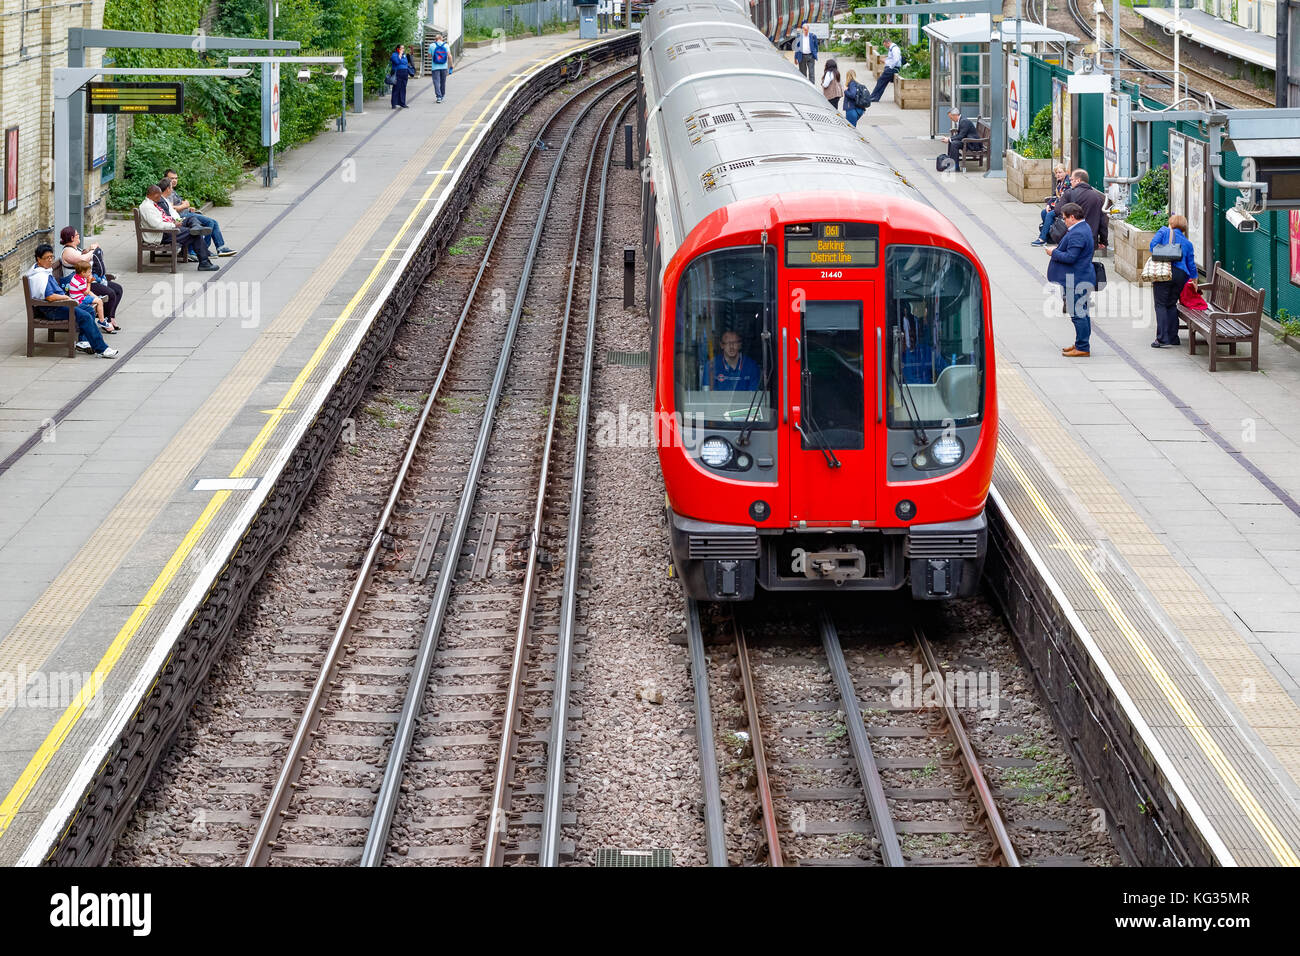 Londres, Royaume-Uni - Octobre 23, 2017 - La station de métro West Brompton, plates-formes avec train arrivant en direction nord Banque D'Images